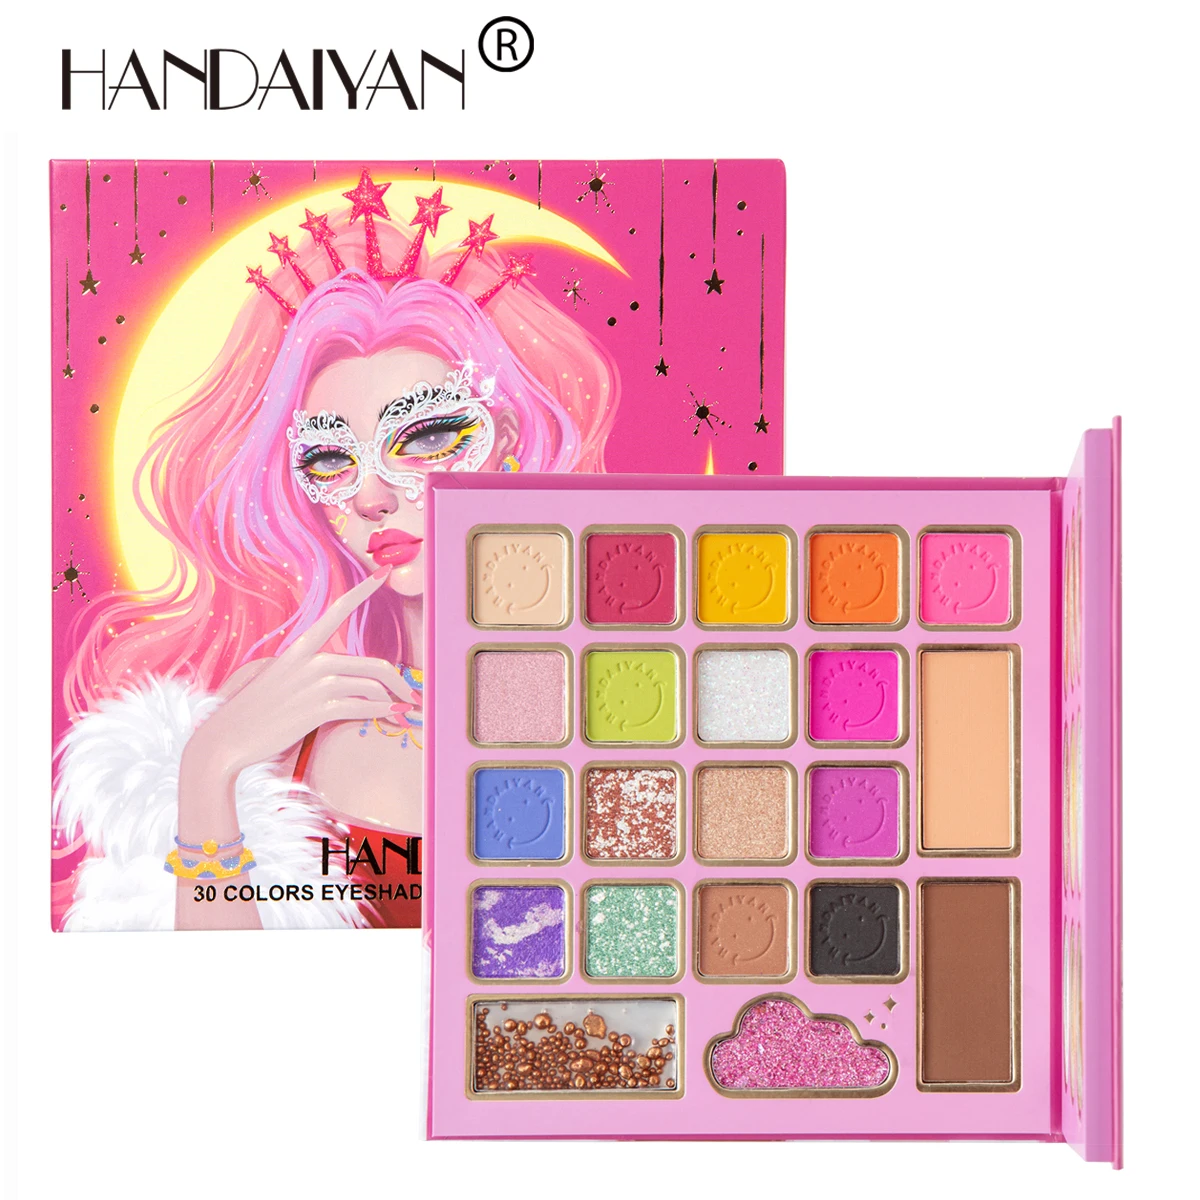 

HANDAIYAN, 30 цветов, палитра теней для макияжа, маска, королевские тени для век с румянами, хайлайтер, пудра, искусственная косметика